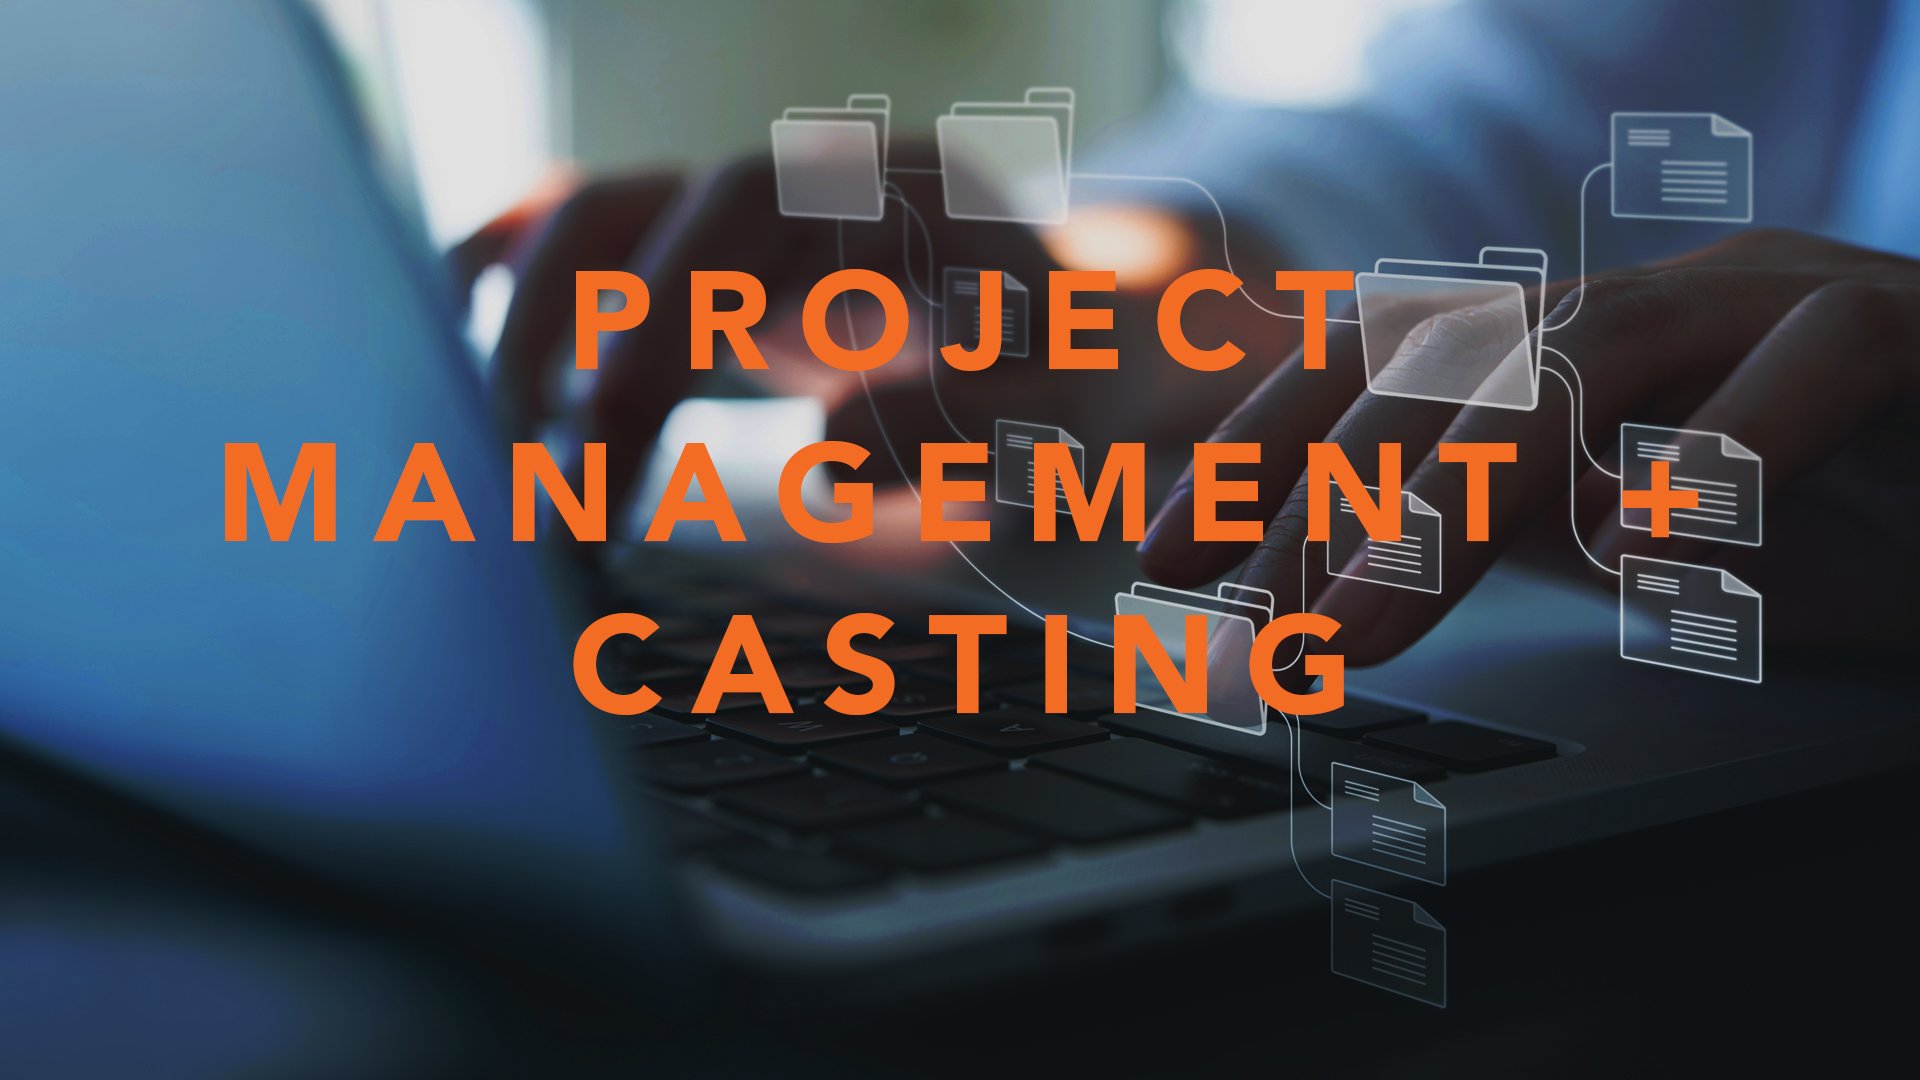 Project Management + Casting<p>Unsere erfahrenen Projektmanager erledigen für Sie: Casting, Booking, Einkauf der Nutzungsrechte, Abrechnung aller SprecherInnen inkl. Sozialversicherung.</p>